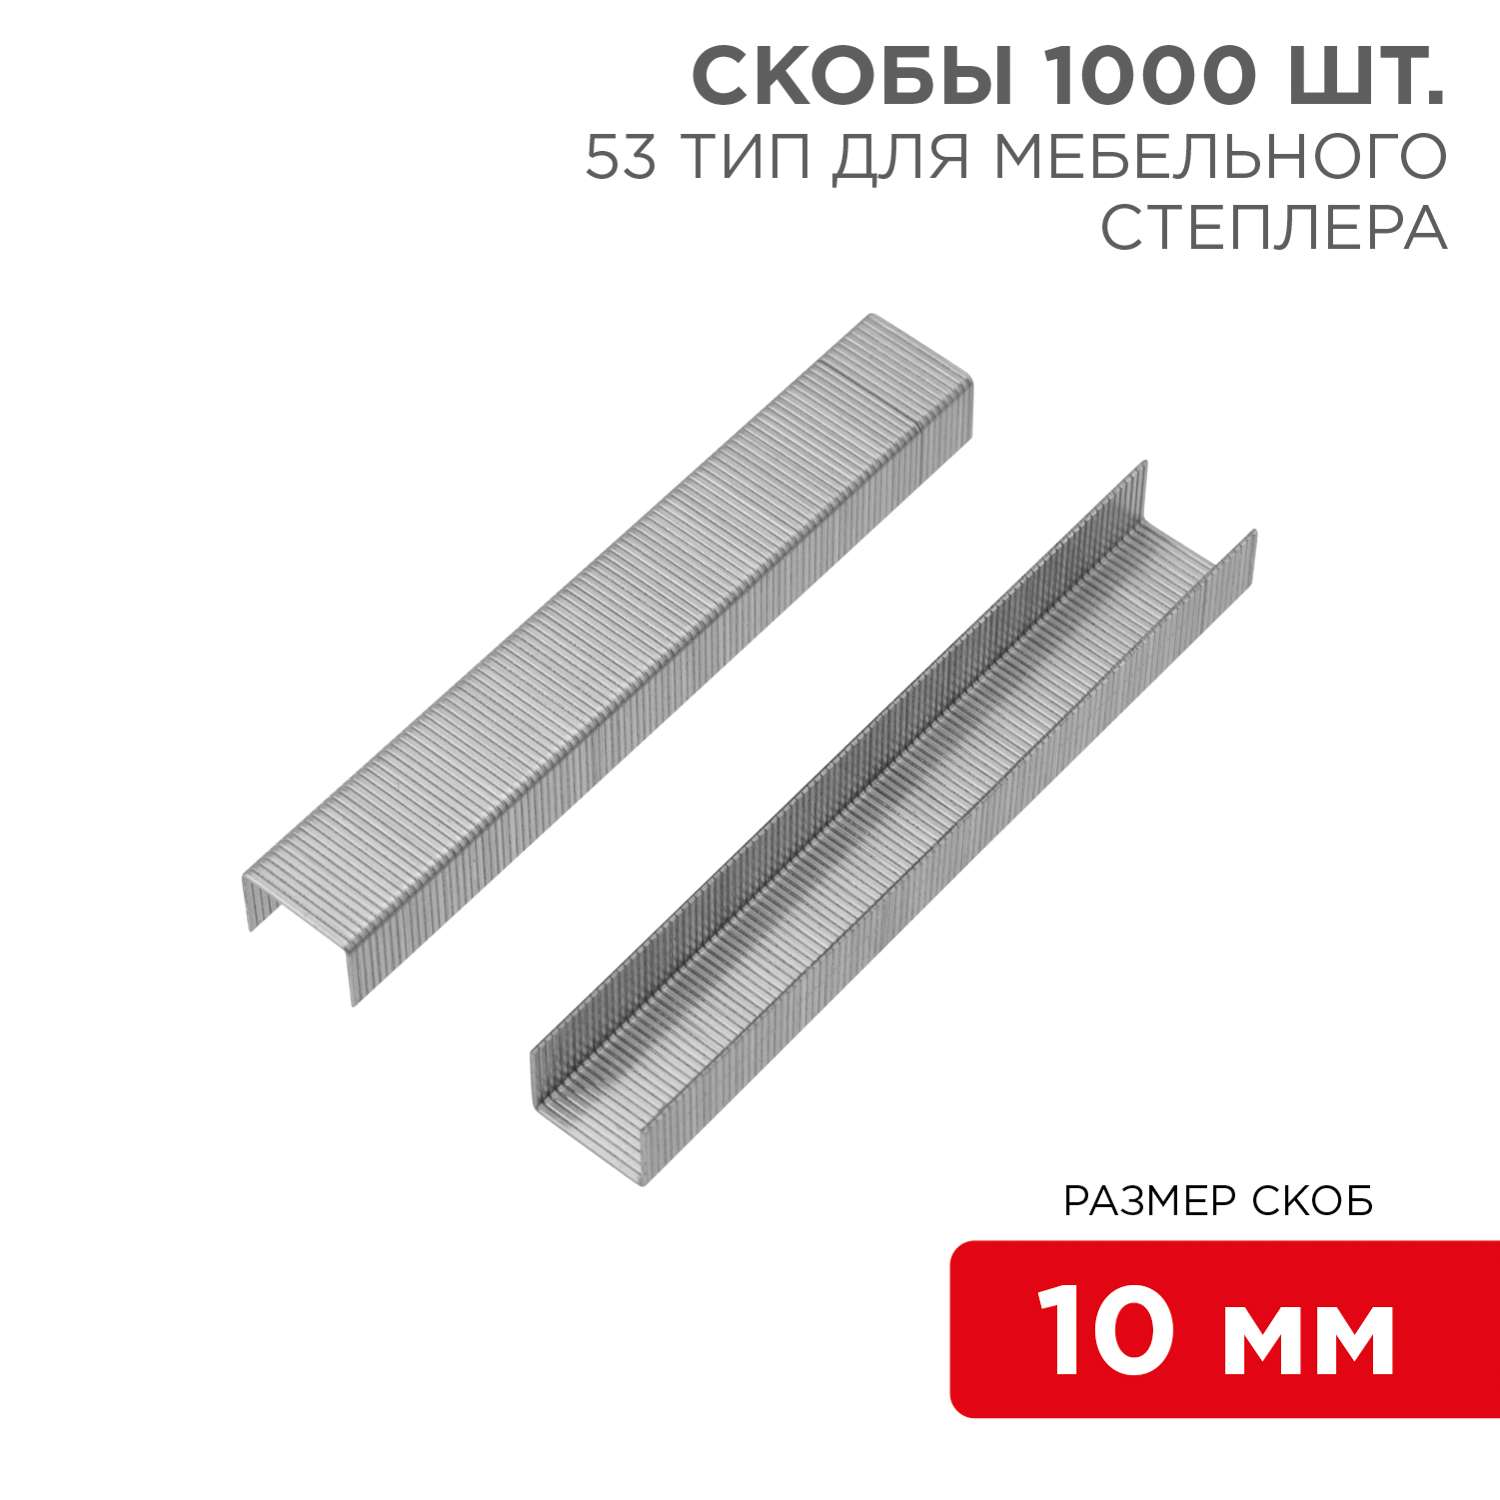 Скобы Kranz для мебельного степлера 10 мм тип 53 1000 штук в упаковке - фото 1